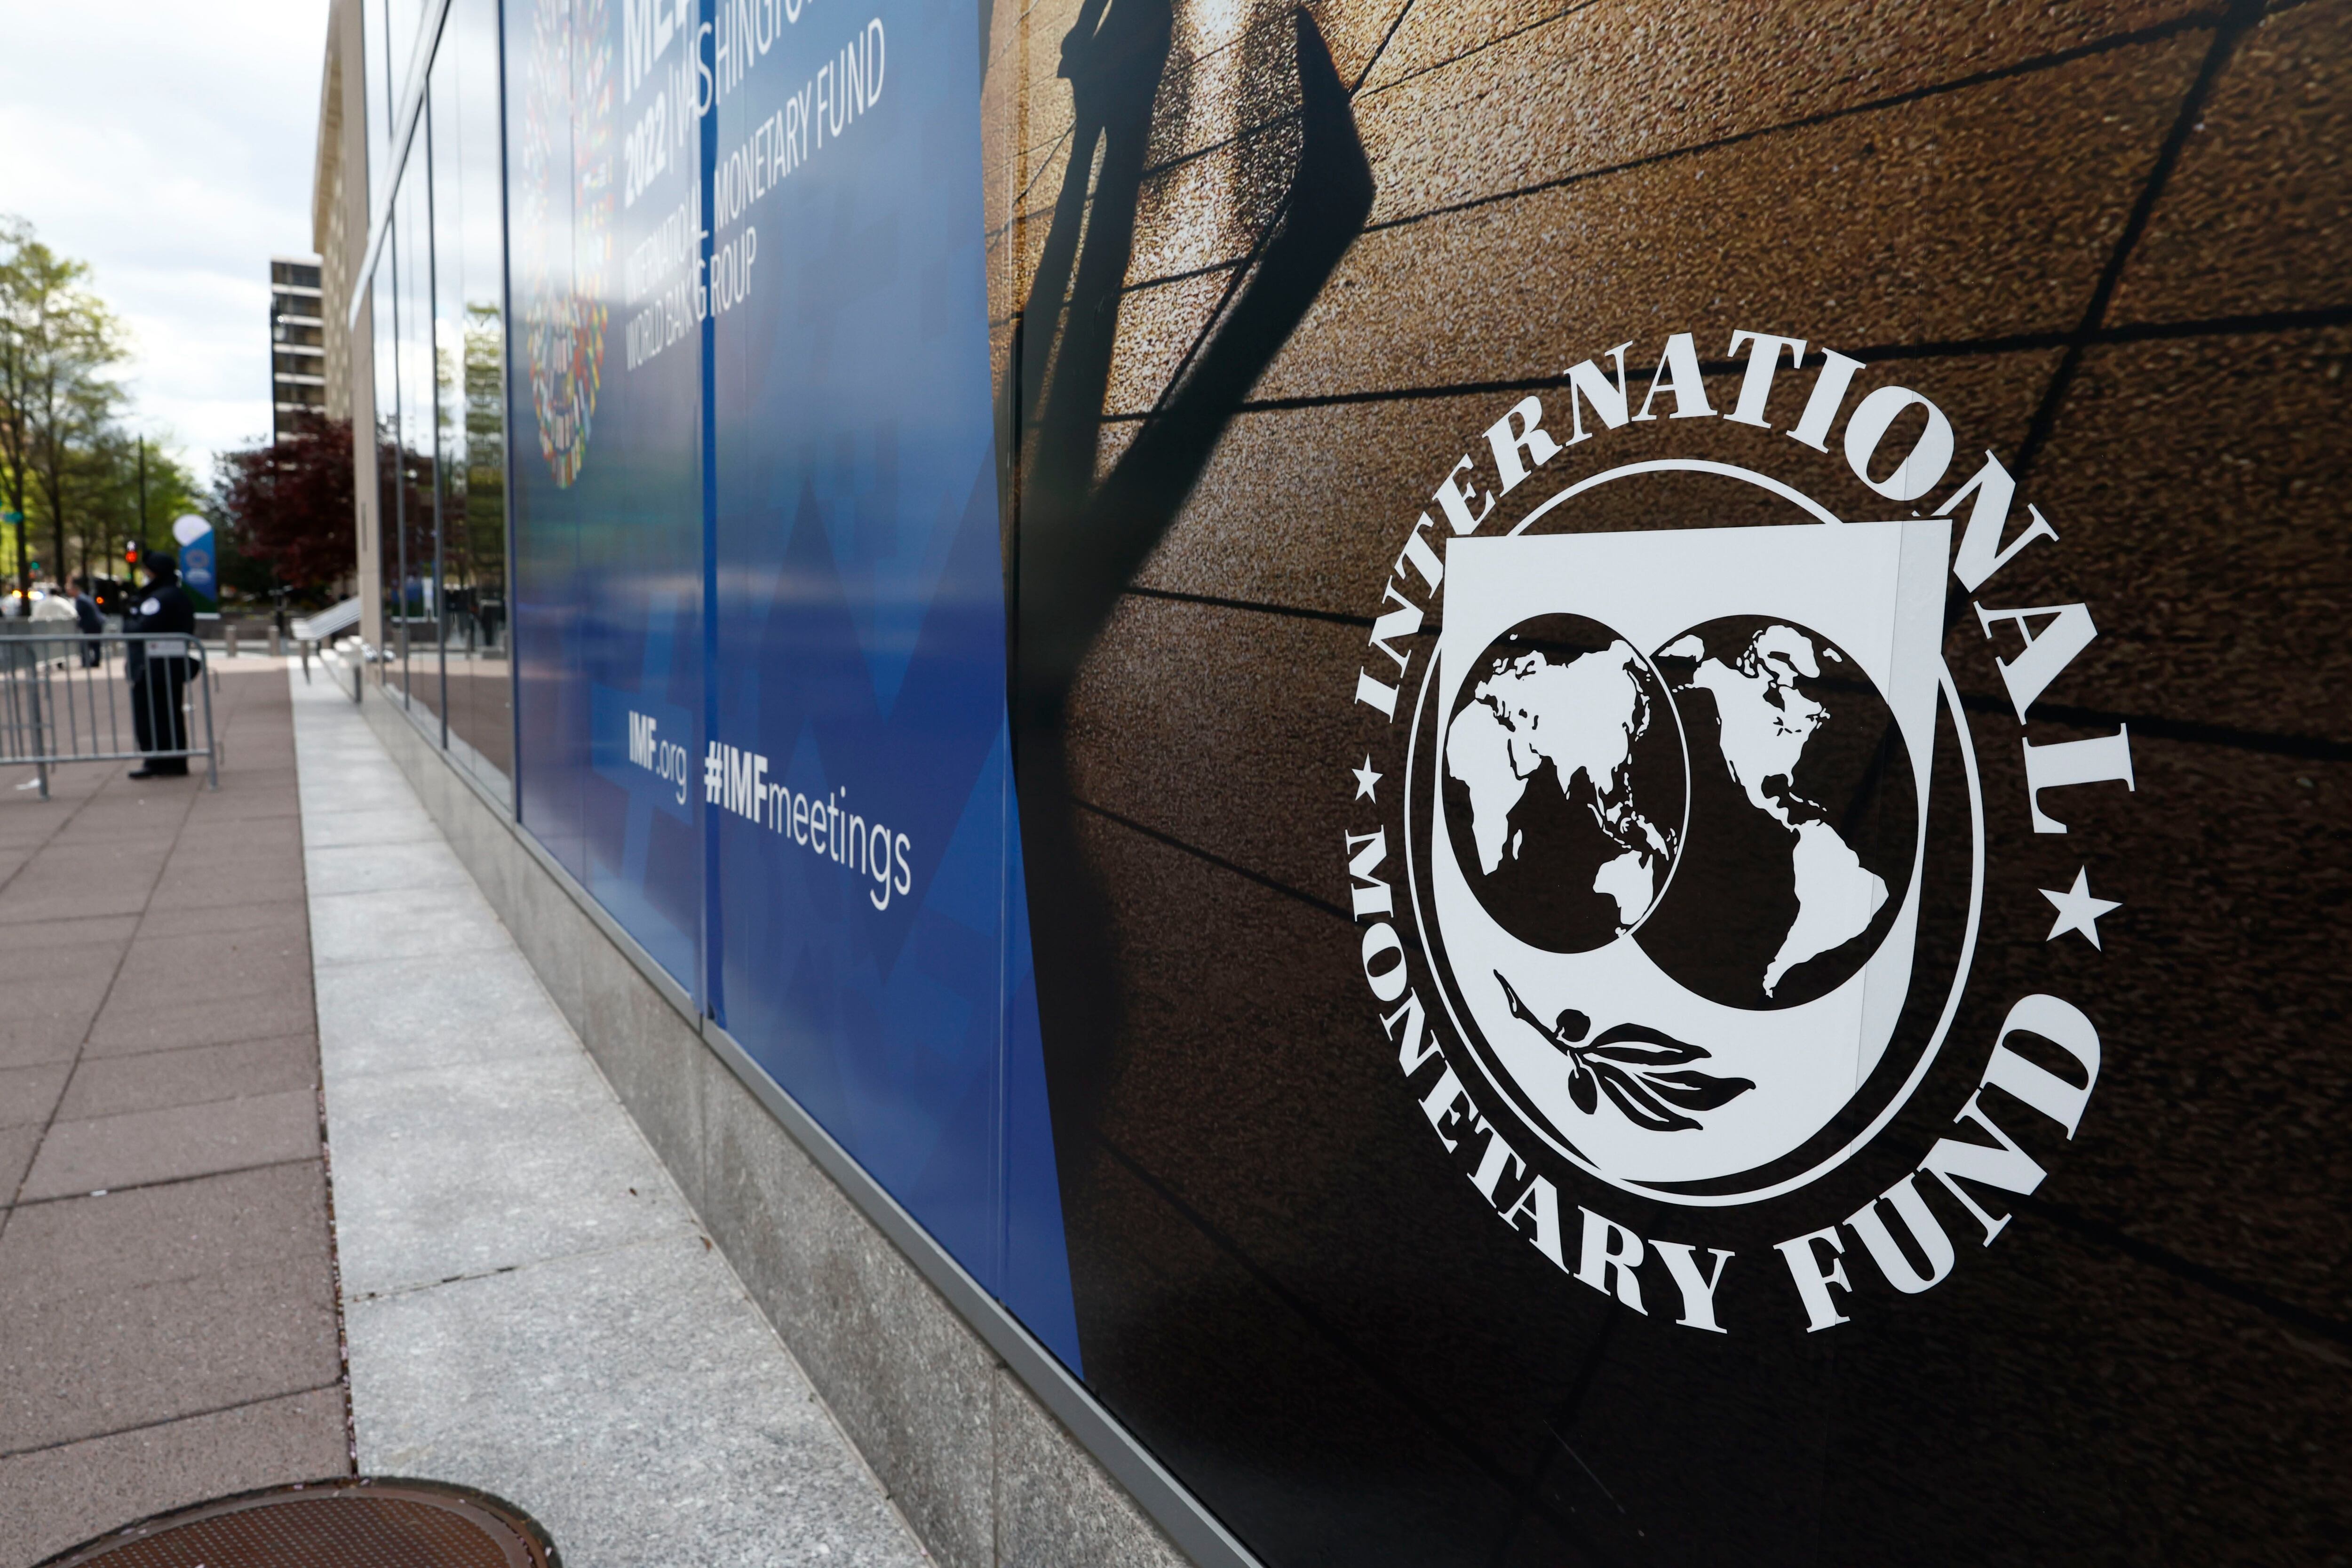 La vereda de la sede del FMI en uno de los "encuentros" del organismo. Algunos temen que haya desencuentro
Europa Press
